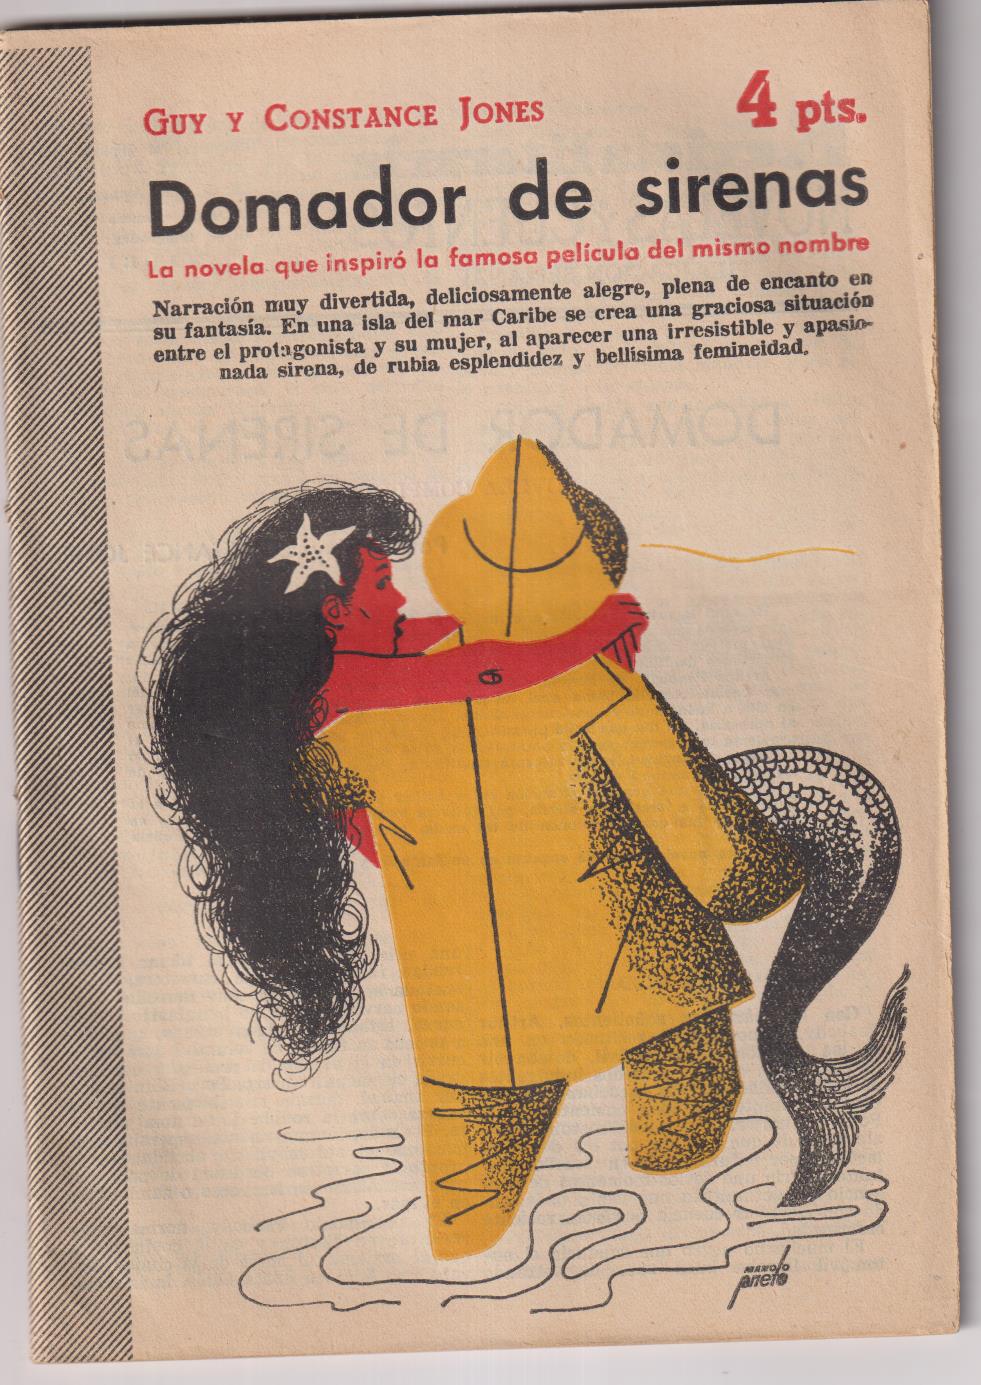 Revista Literaria Novelas y Cuentos nº 1220. Guy y C. Jones. Domador de sirenas, año 1954